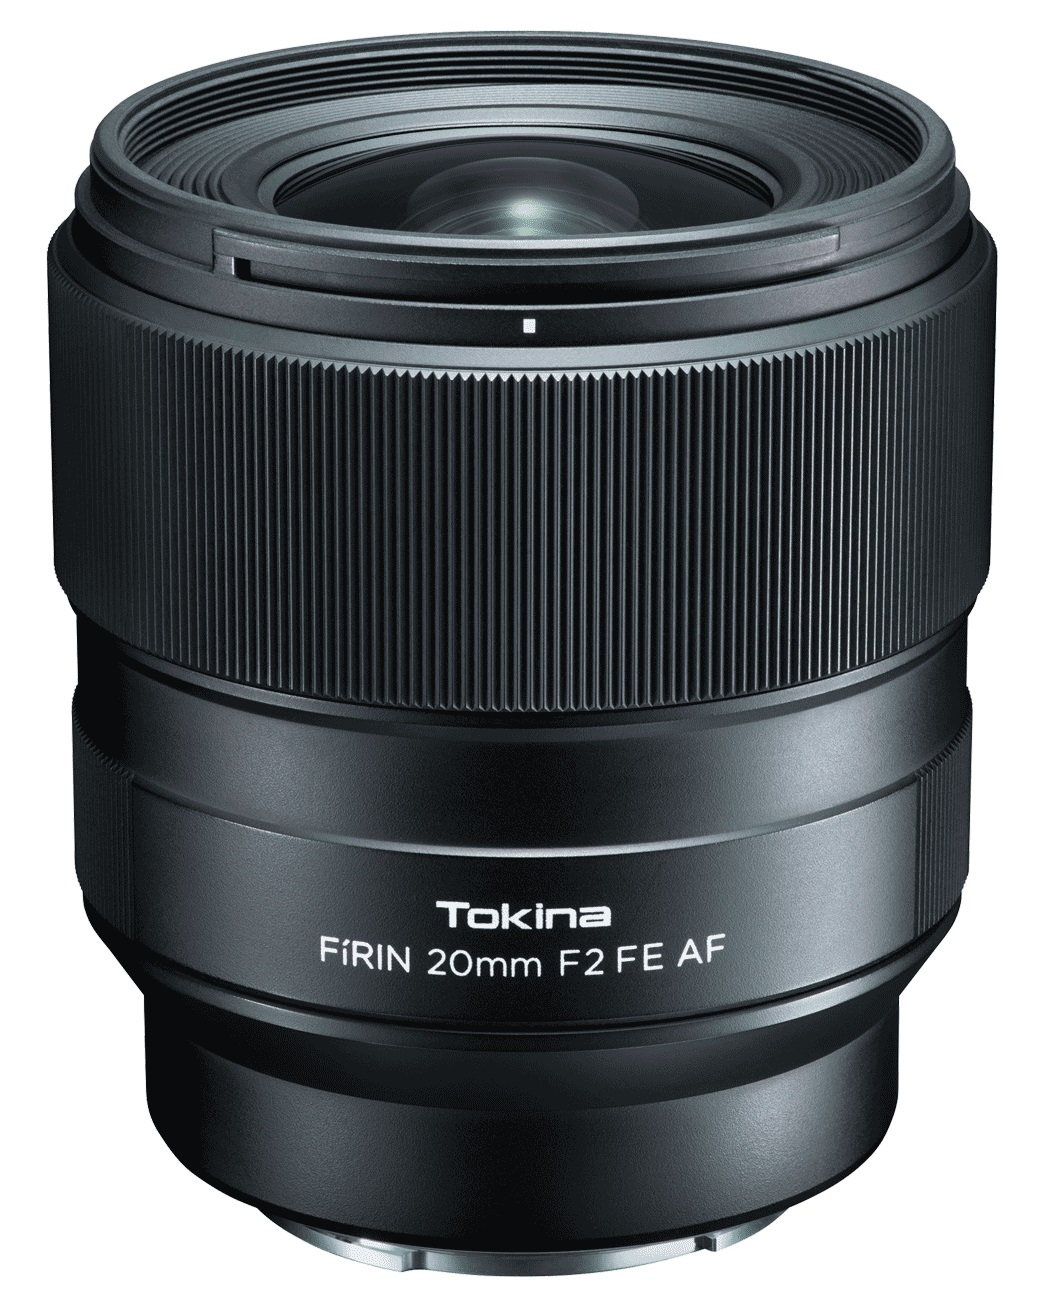 Объектив Tokina FIRIN 20mm F2 FE AF для Sony автофокус 4961607634509 - фото 1